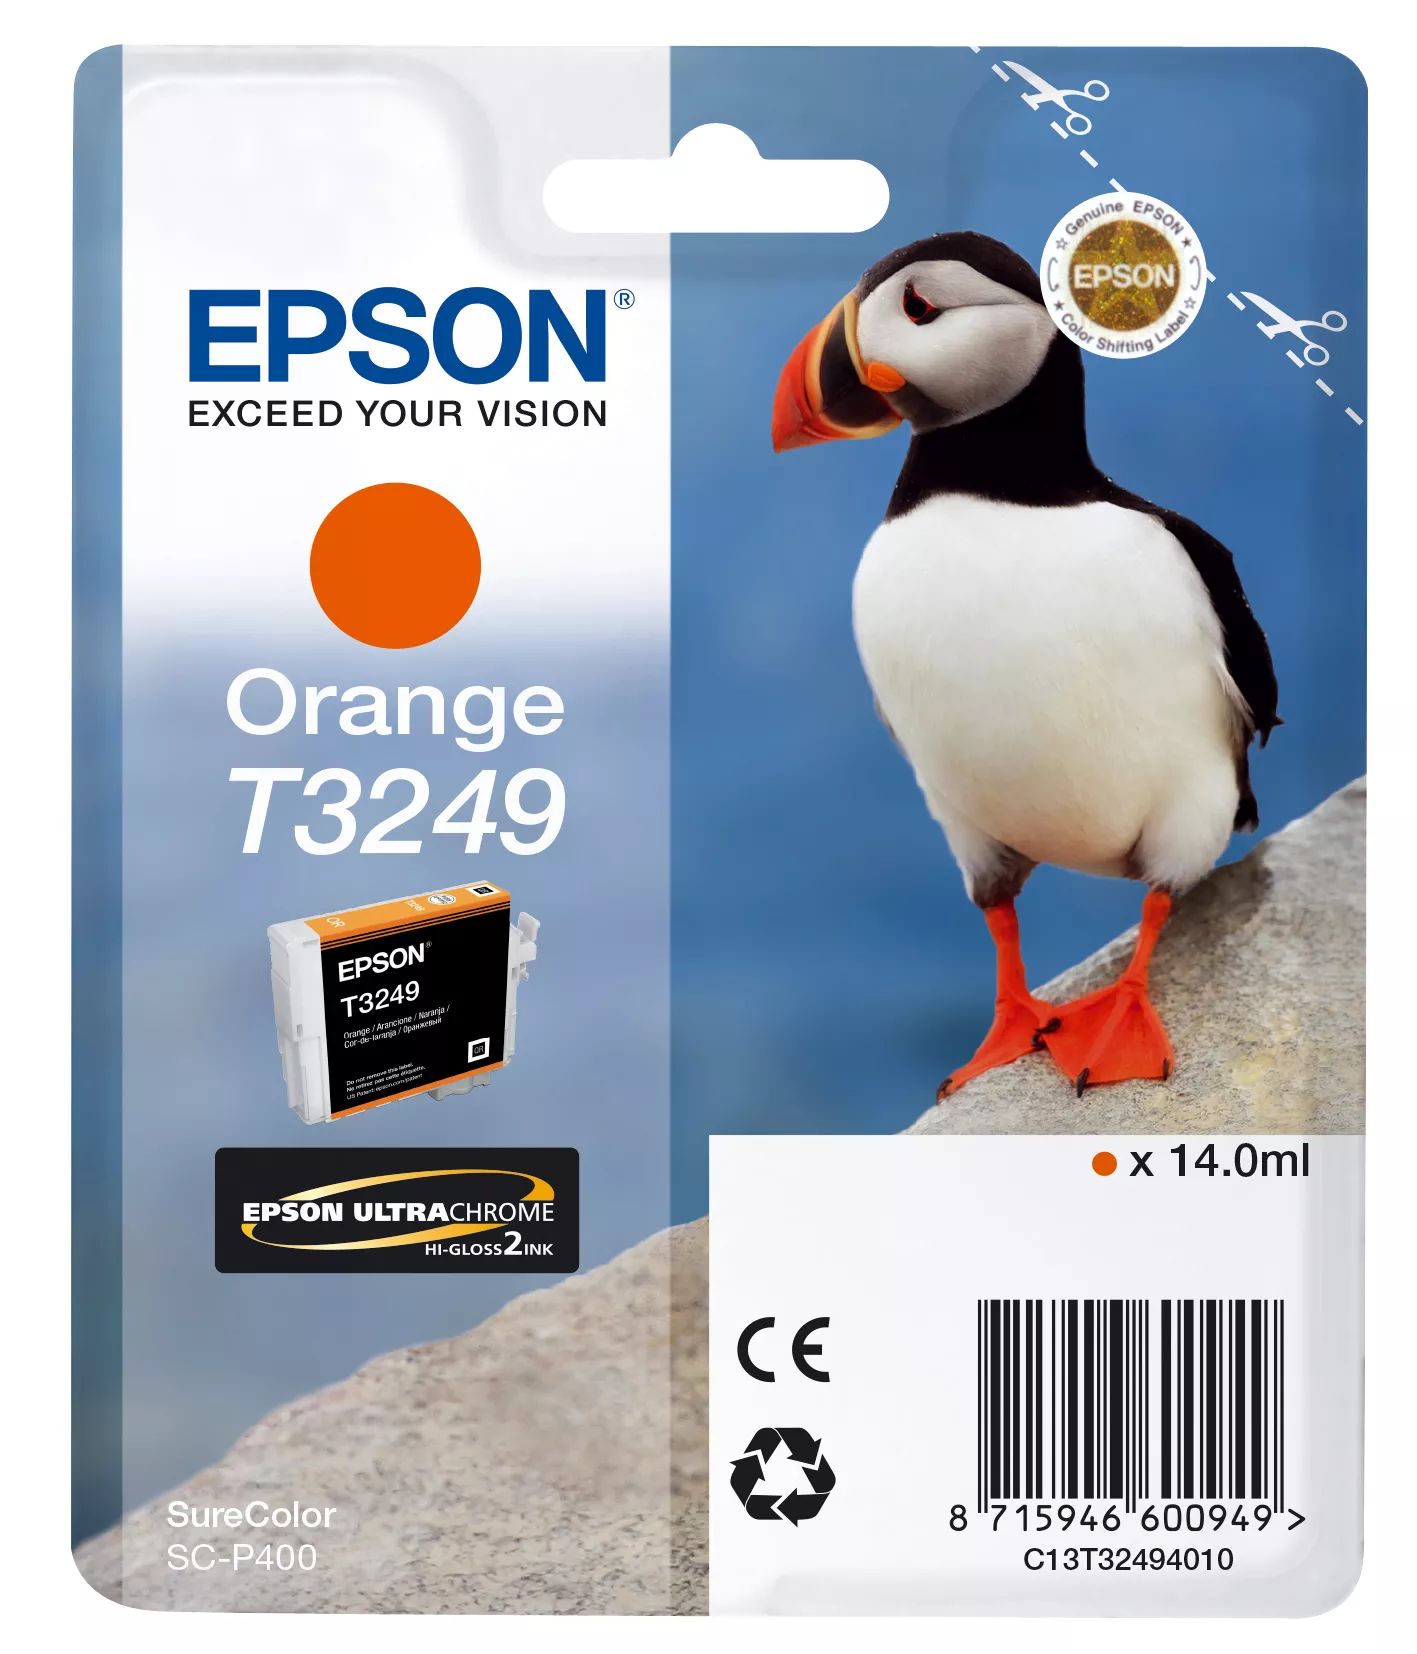 Vente EPSON Cartouche T3249 - Orange 980 pages au meilleur prix